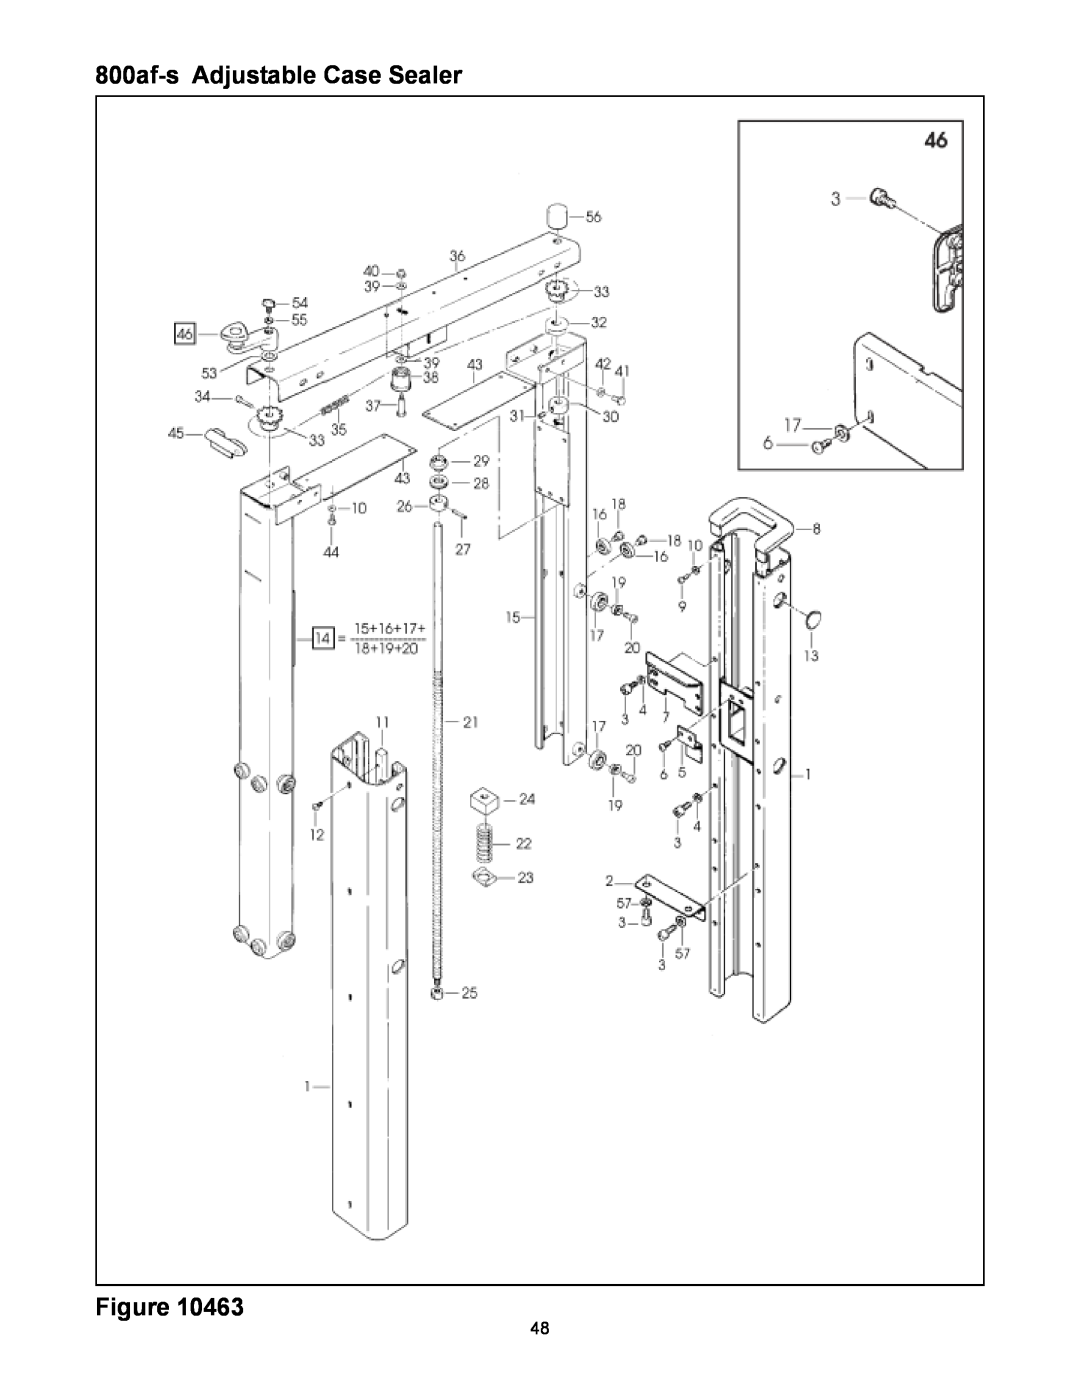 3M manual 800af-sAdjustable Case Sealer Figure 